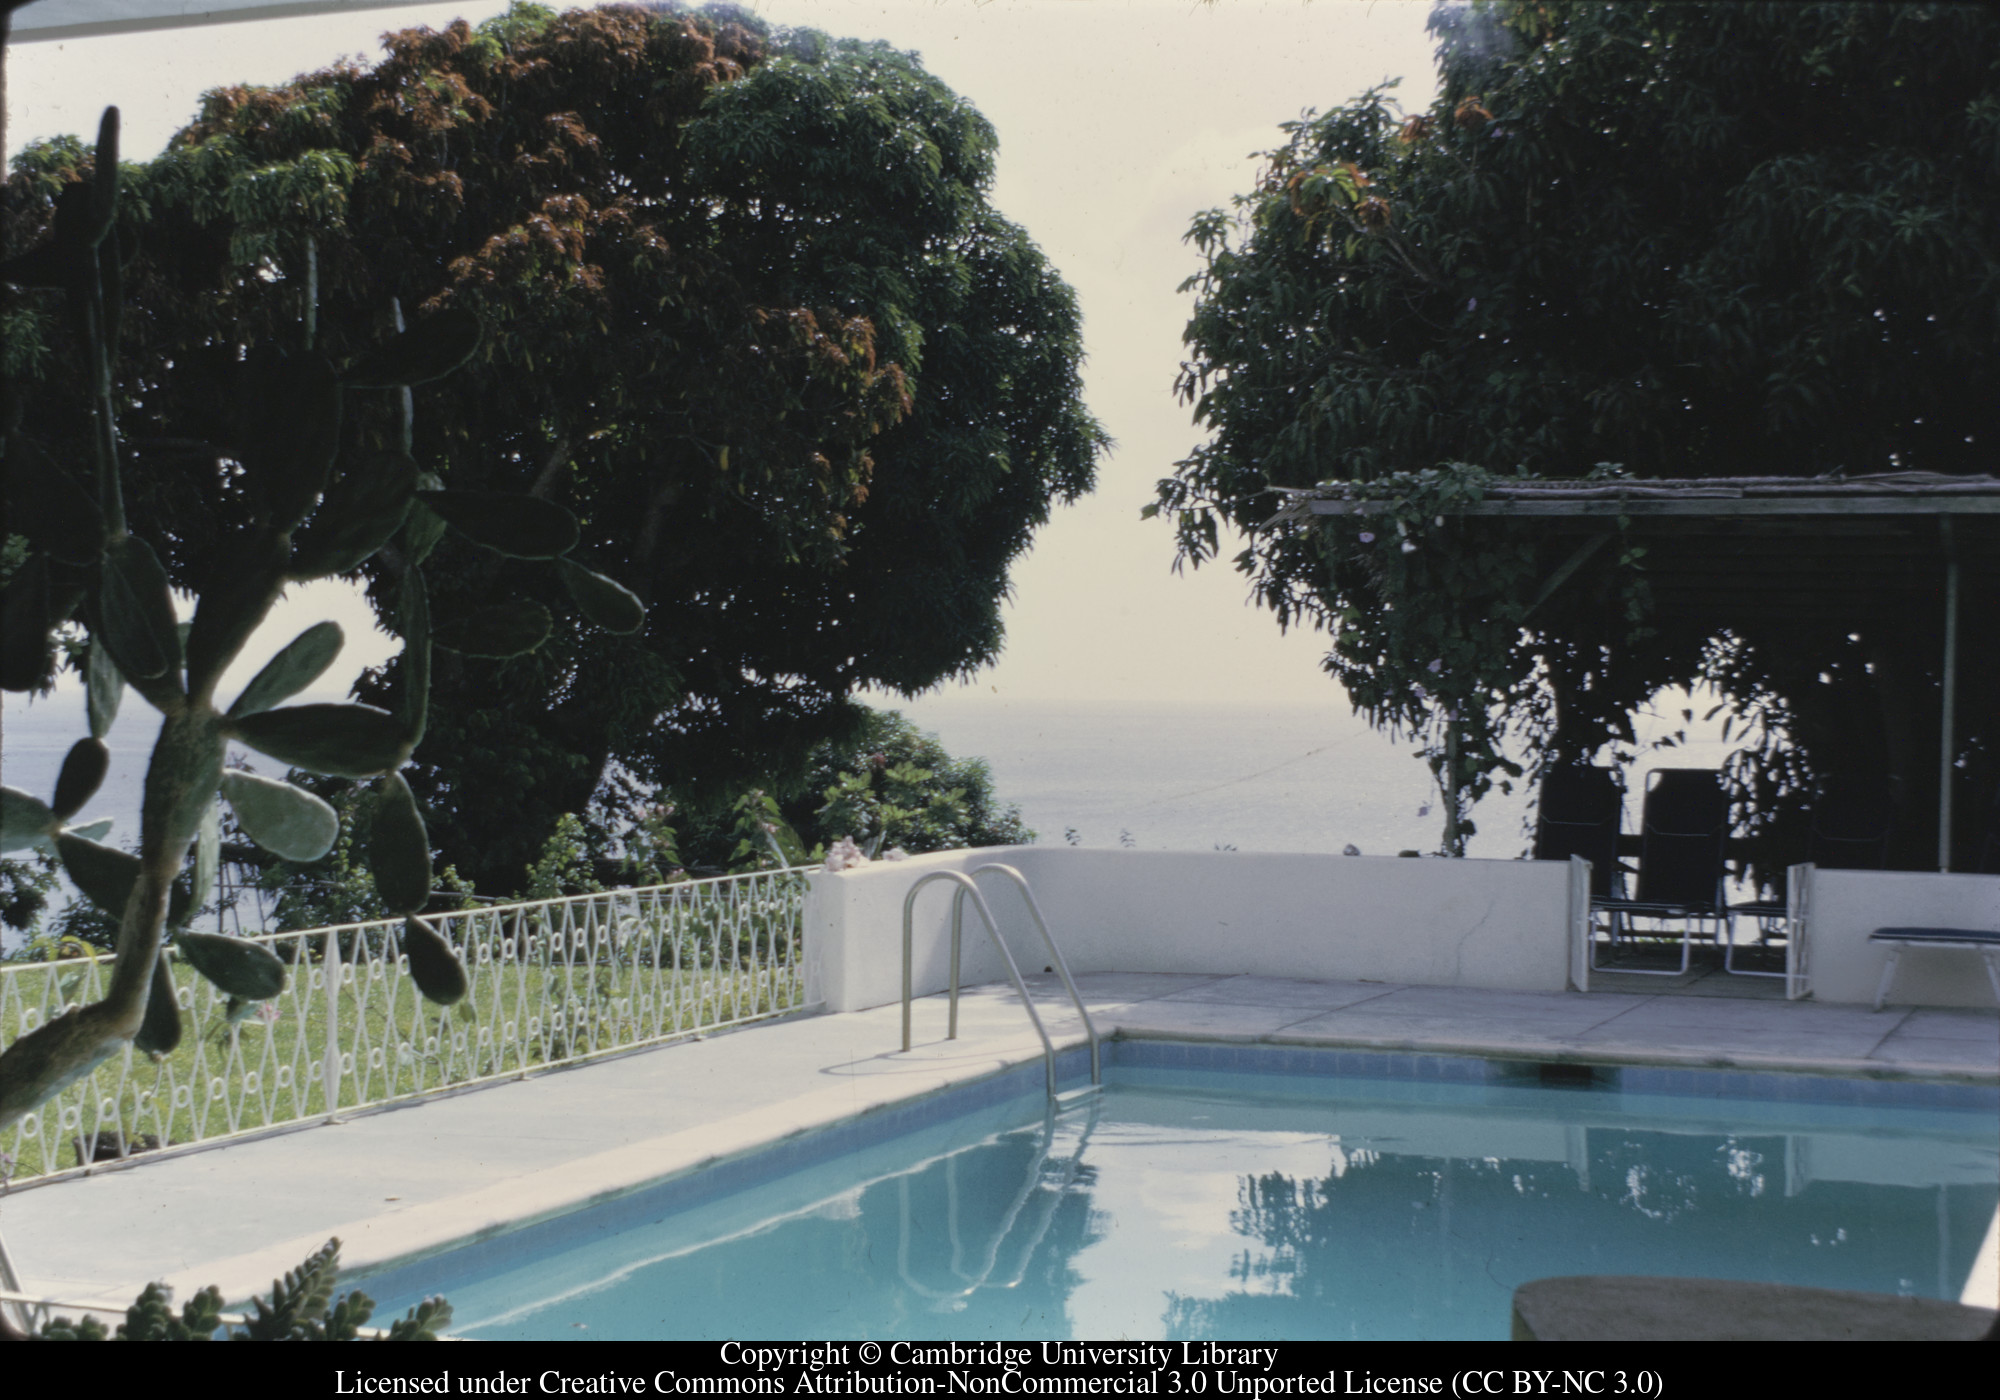 C [Ciceron] : pool, 1973-02